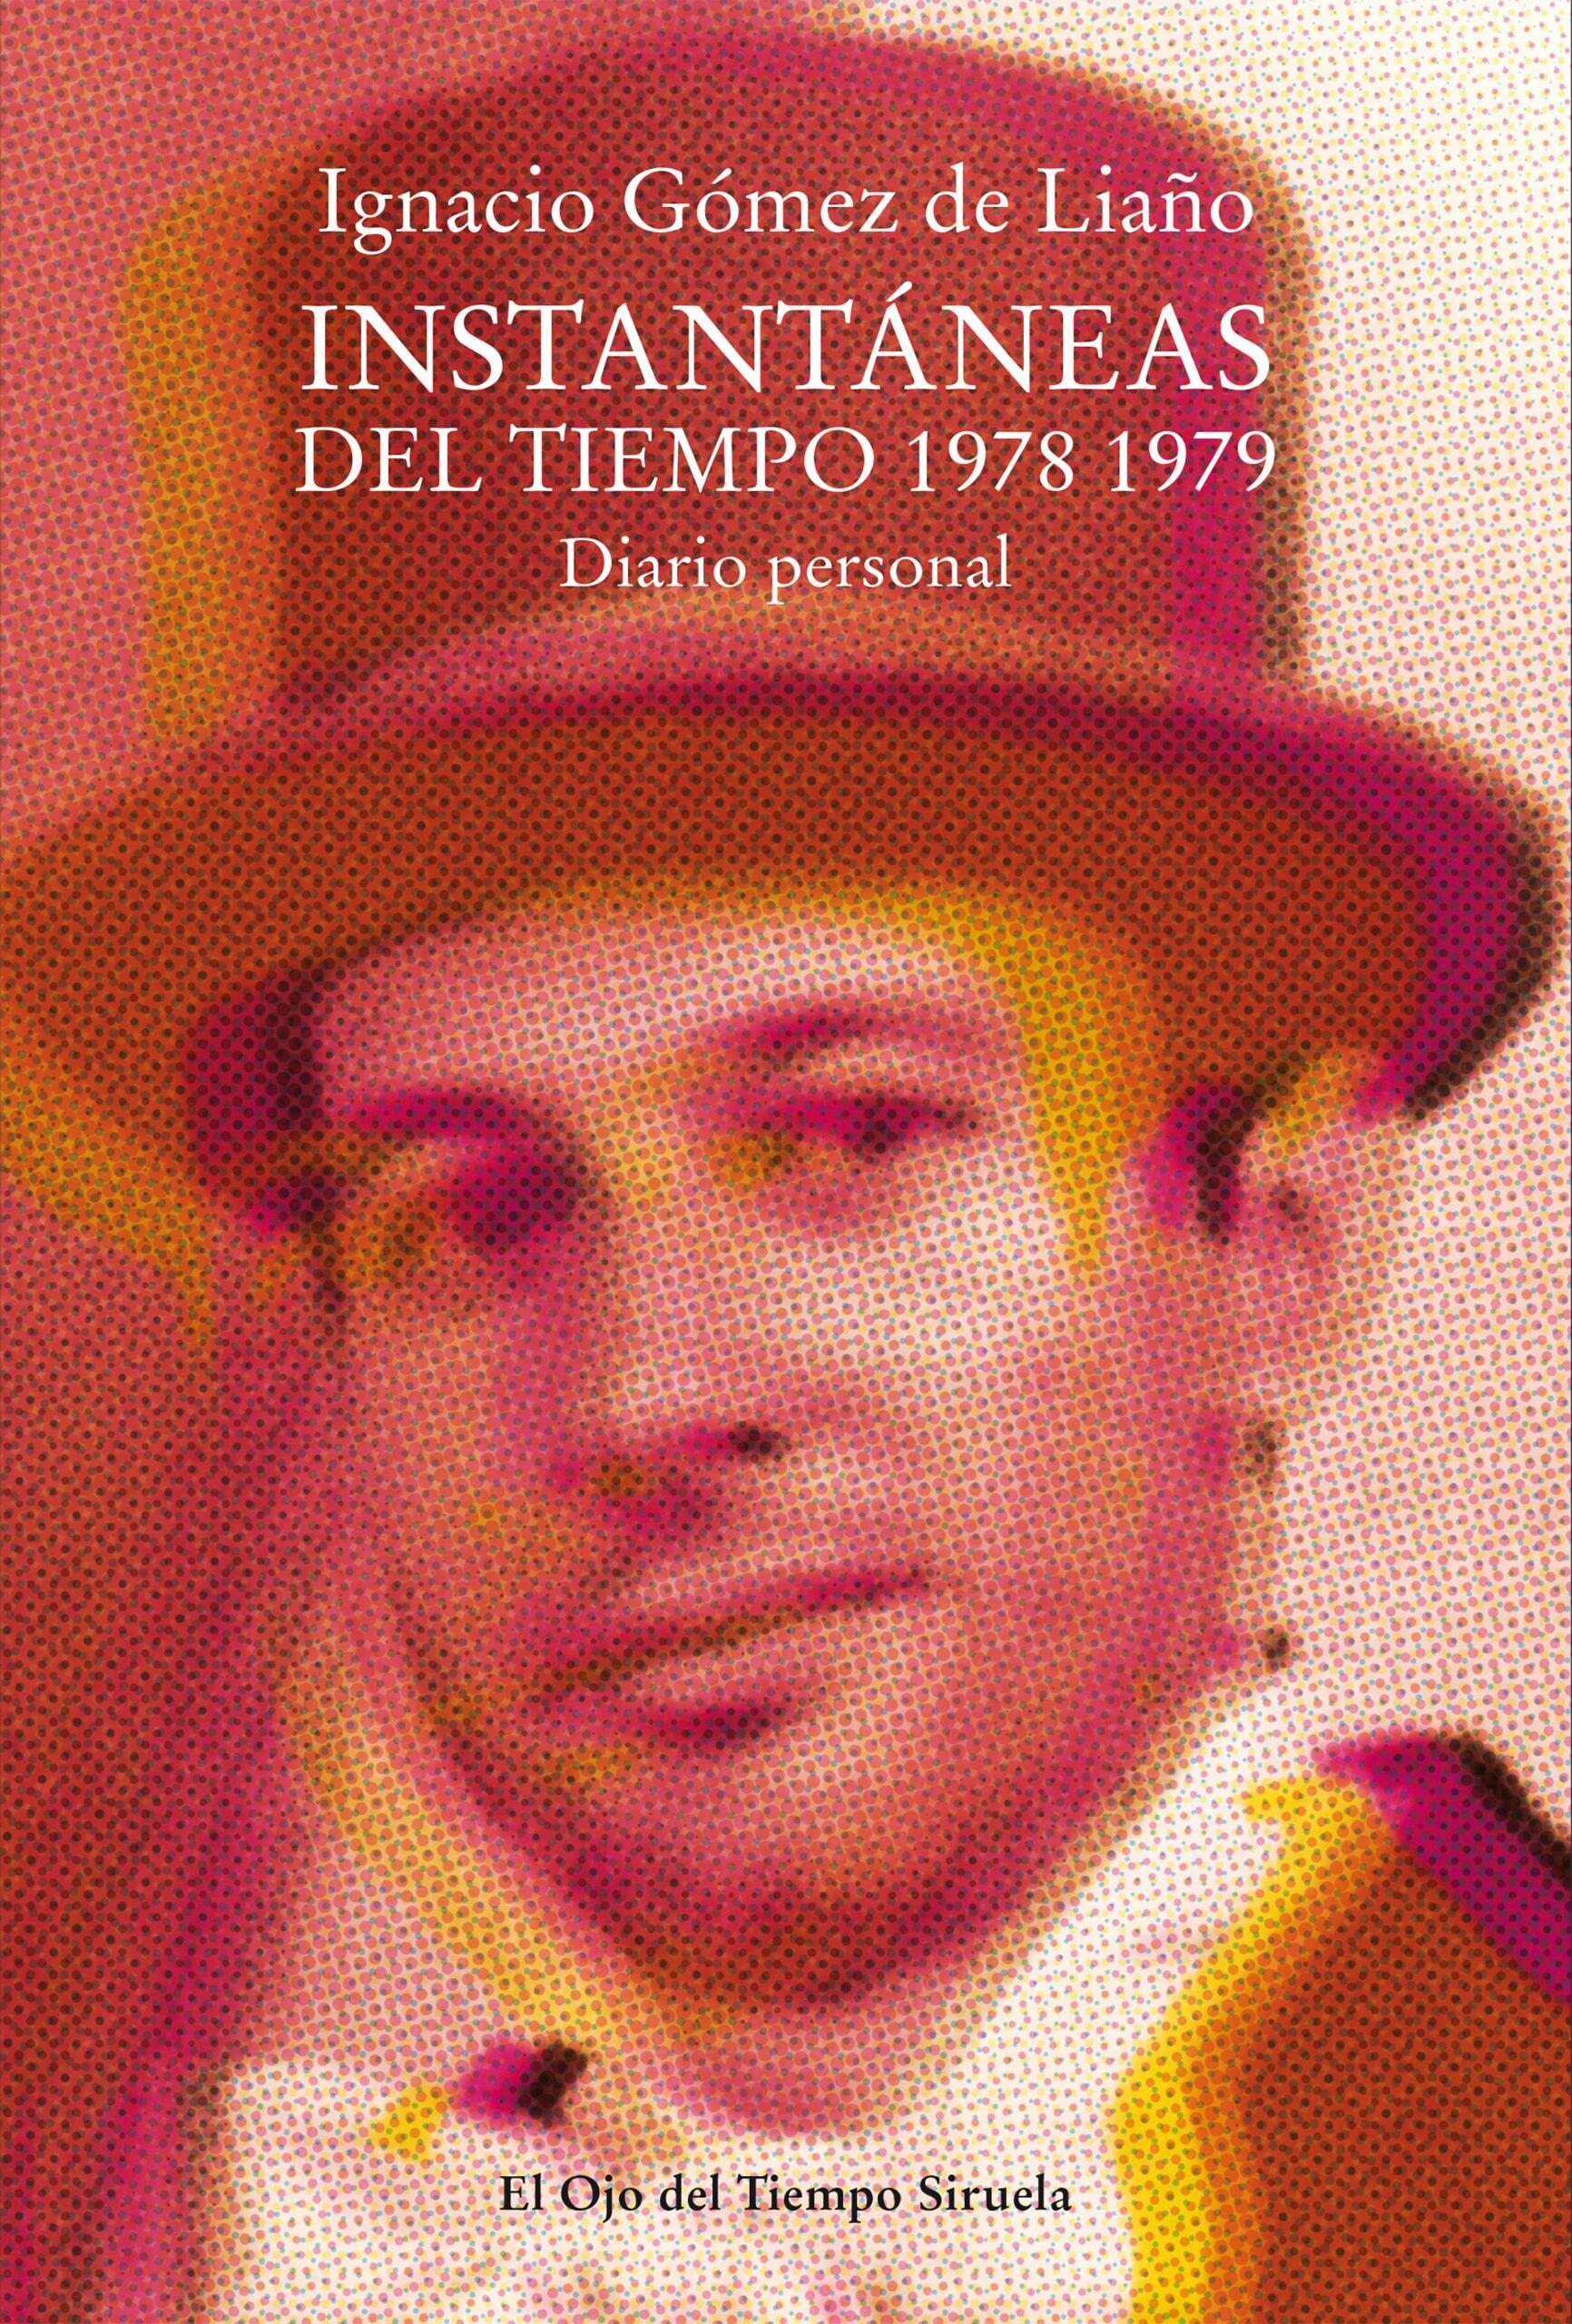 Ignacio Gómez de Liaño publica ‘Instantáneas del tiempo 1978-1979’